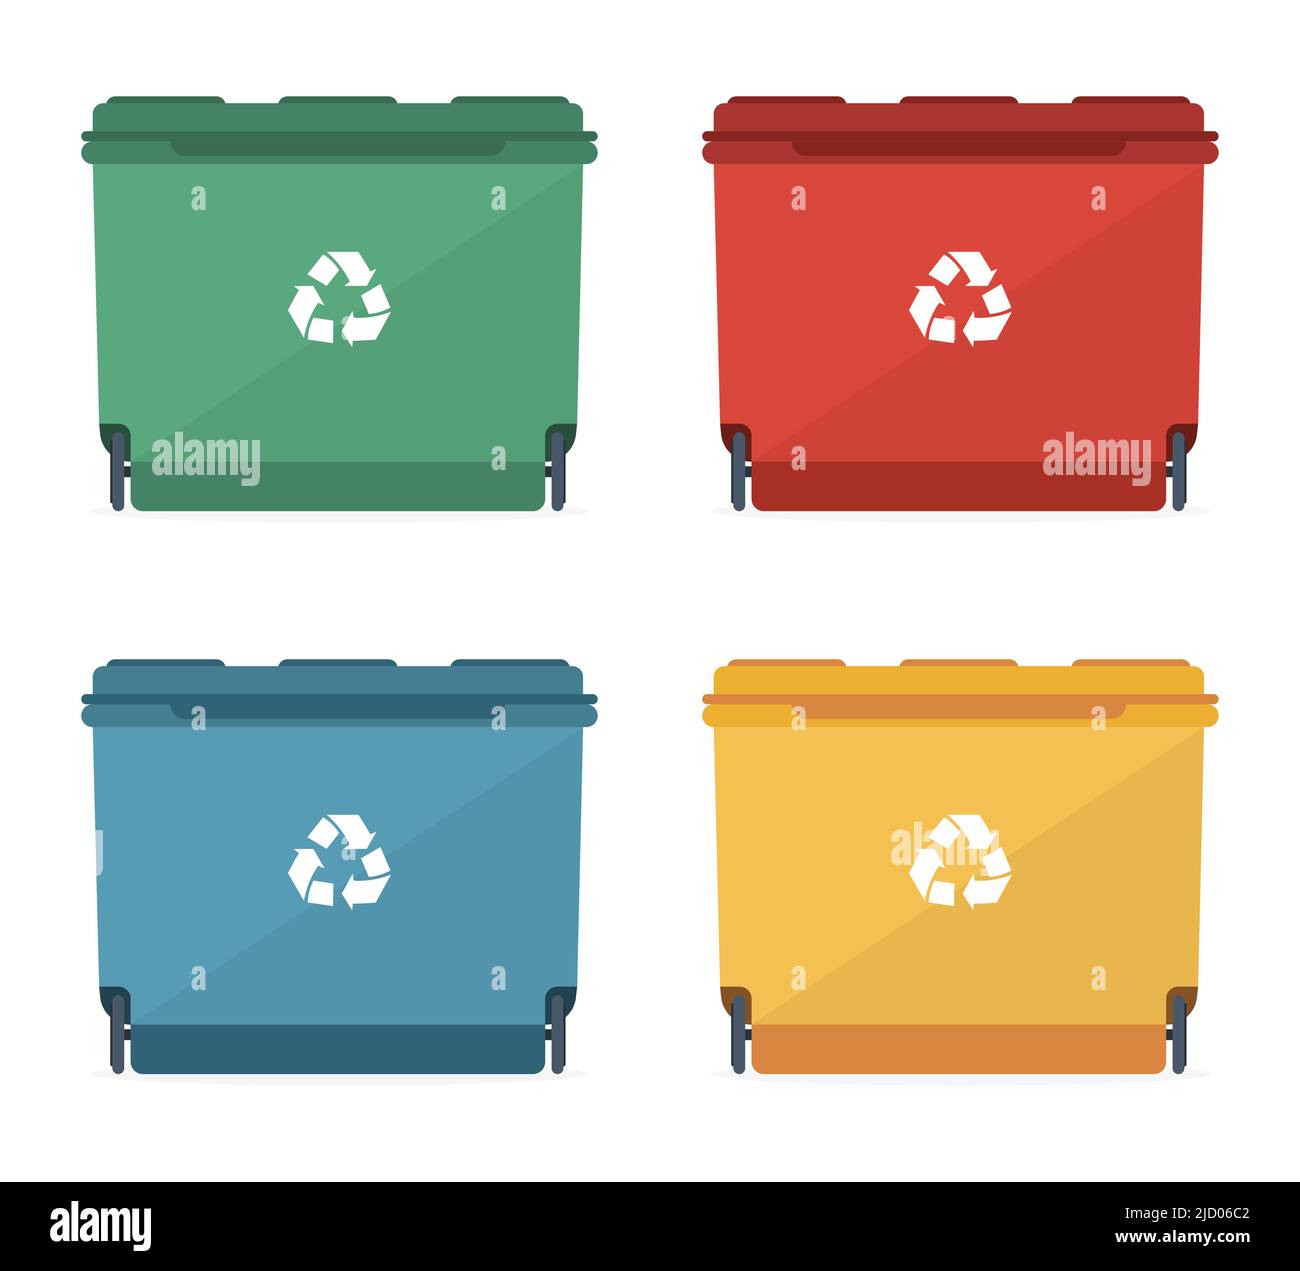 Poubelles de différentes tailles et couleurs avec une affiche de recyclage. Illustration vectorielle. Illustration de Vecteur